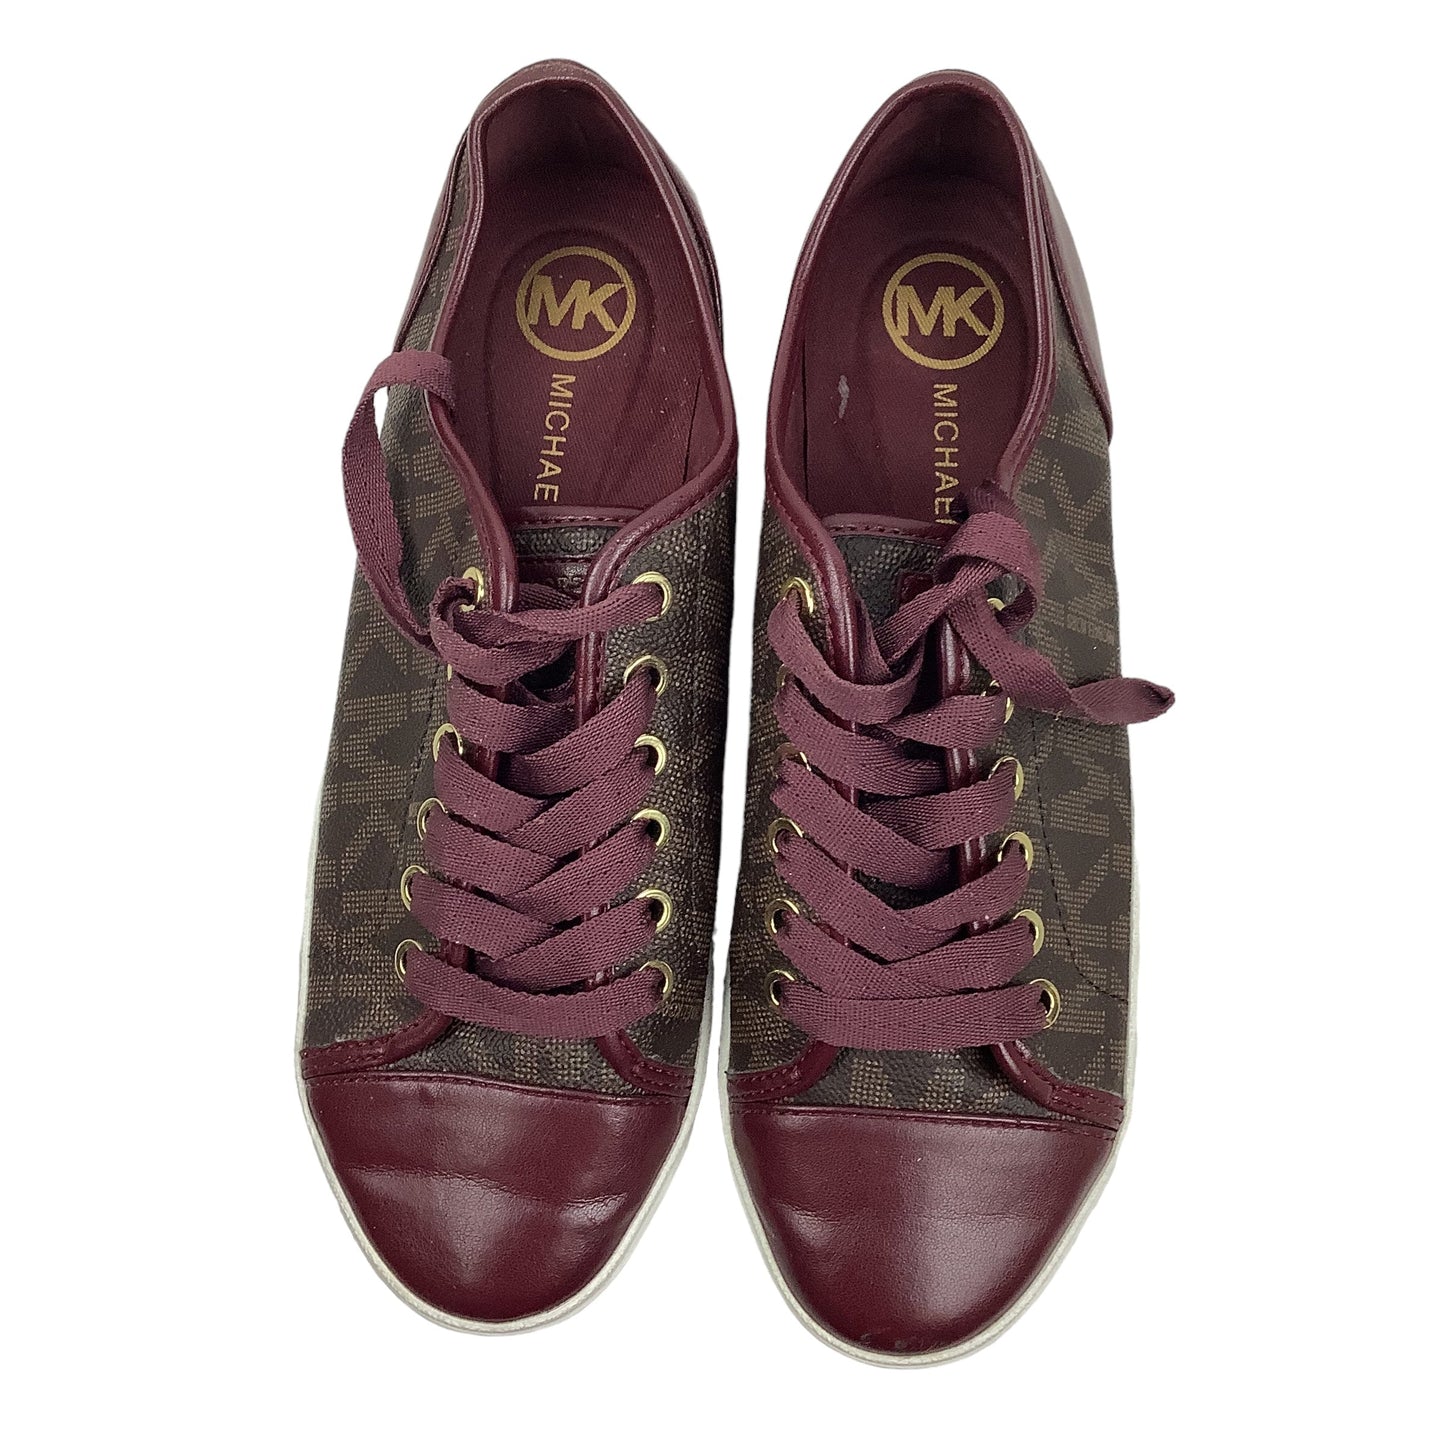 Purple Shoes Designer Michael Kors, Size 7